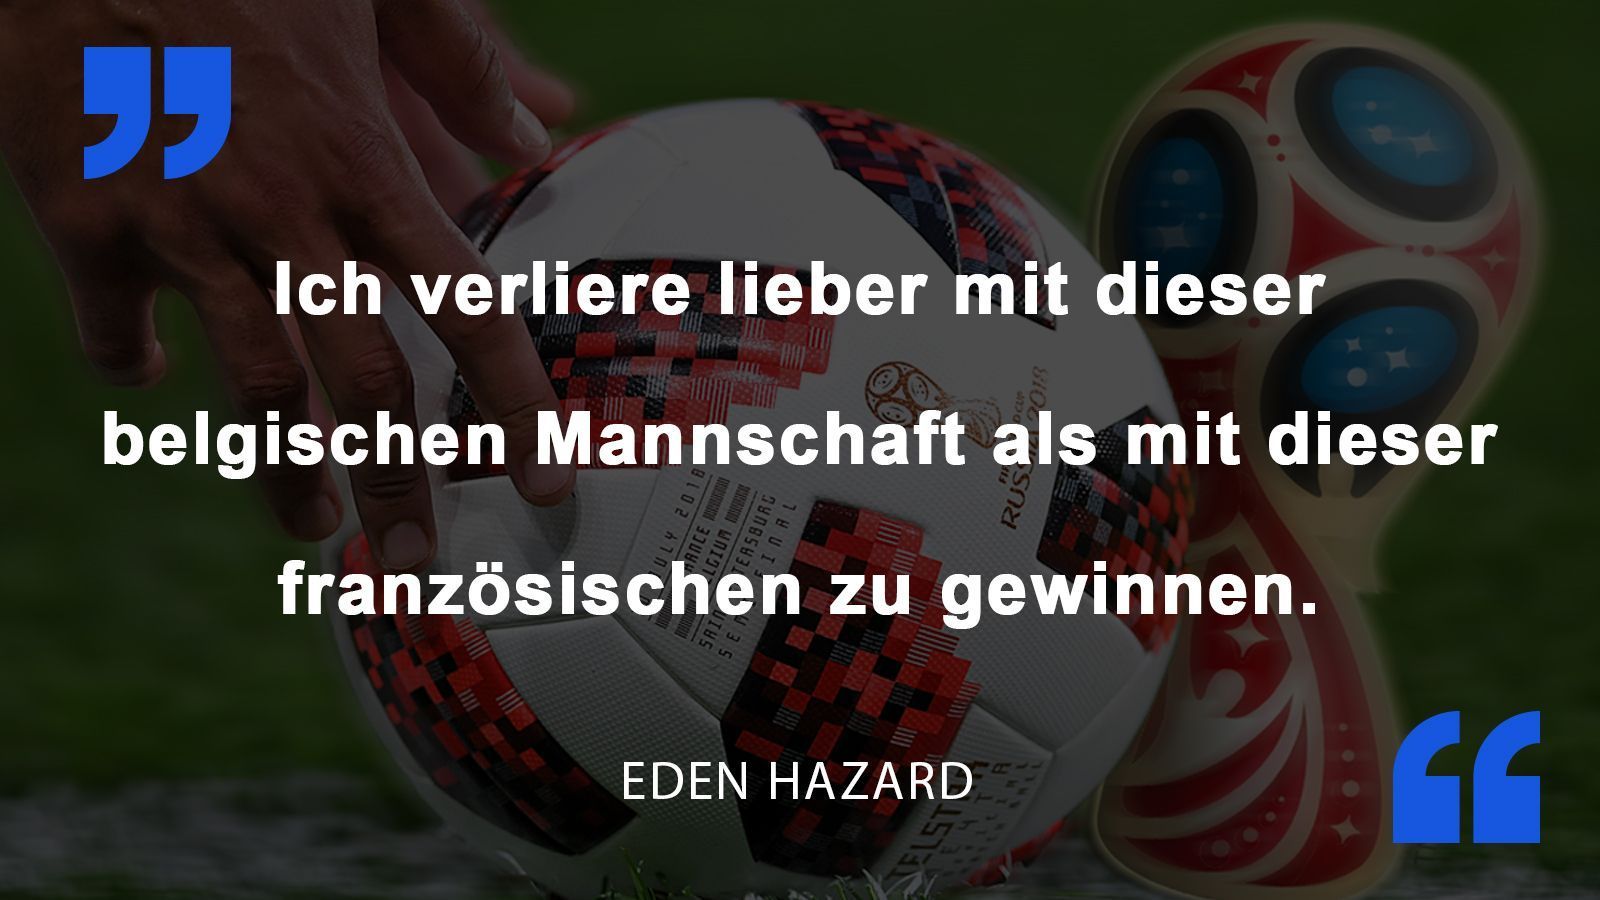 
                <strong>Eden Hazard</strong><br>
                Eden Hazard nach der Niederlage im Halbfinale gegen Frankreich.
              